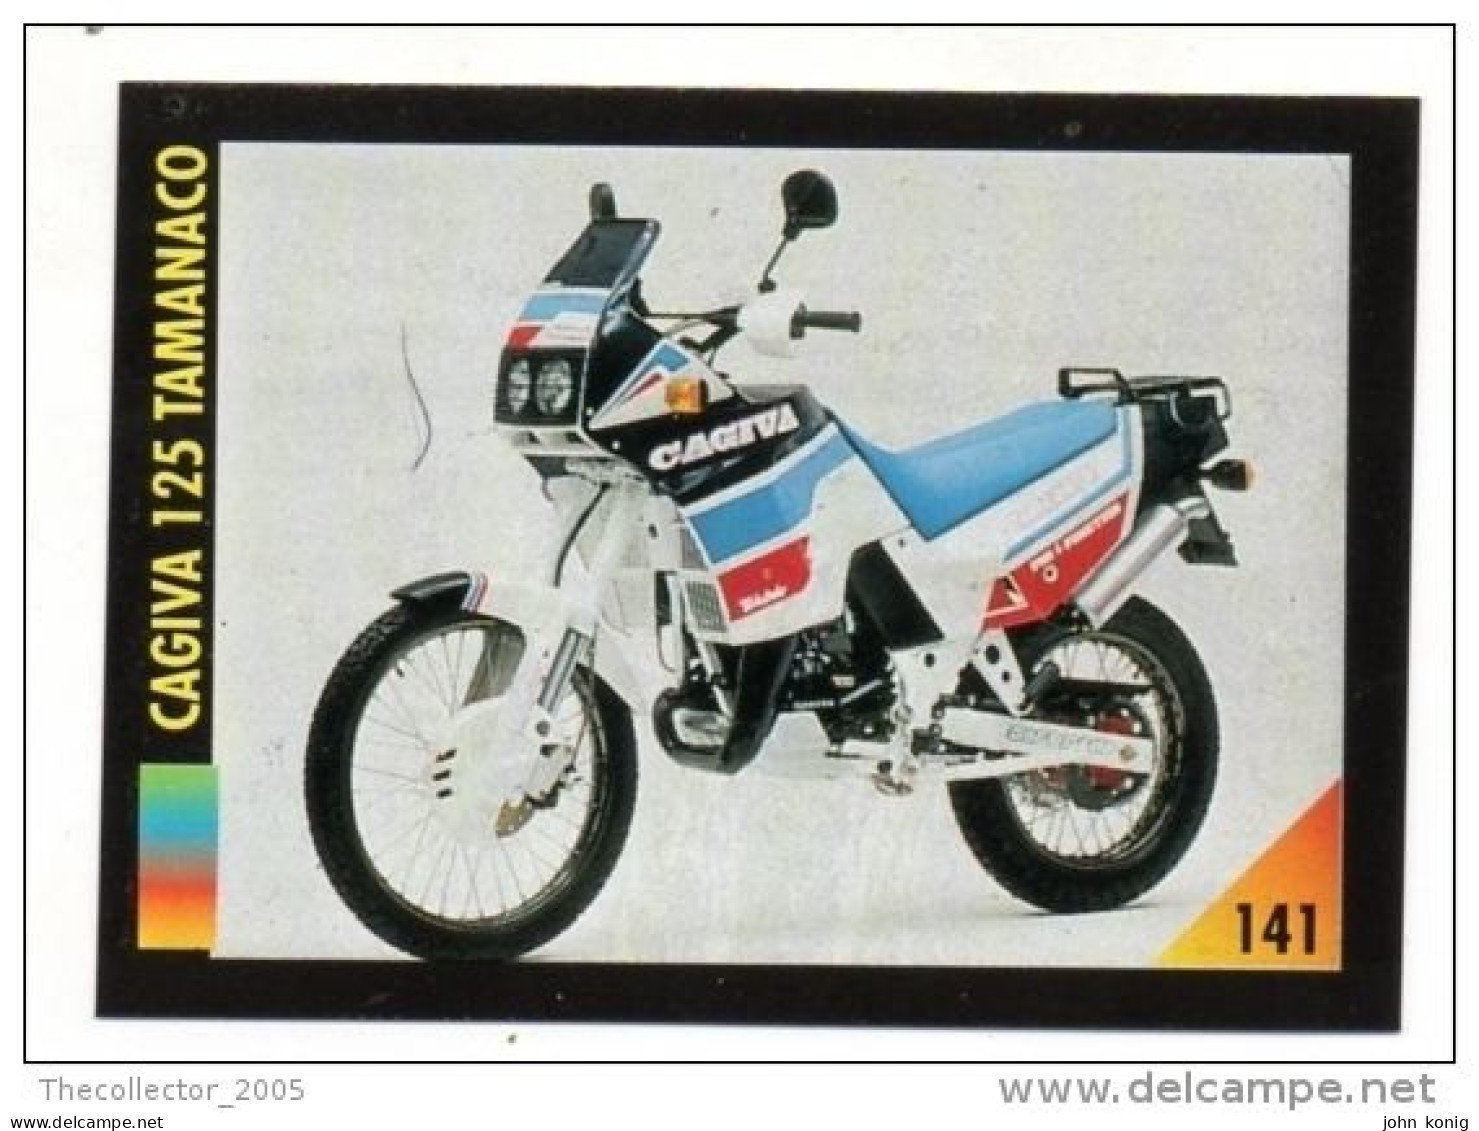 FIGURINA TRADING CARDS - LA MIA MOTO - MY MOTORBIKE - MASTERS EDIZIONI (1993) - CAGIVA 125 TAMANACO - Motores